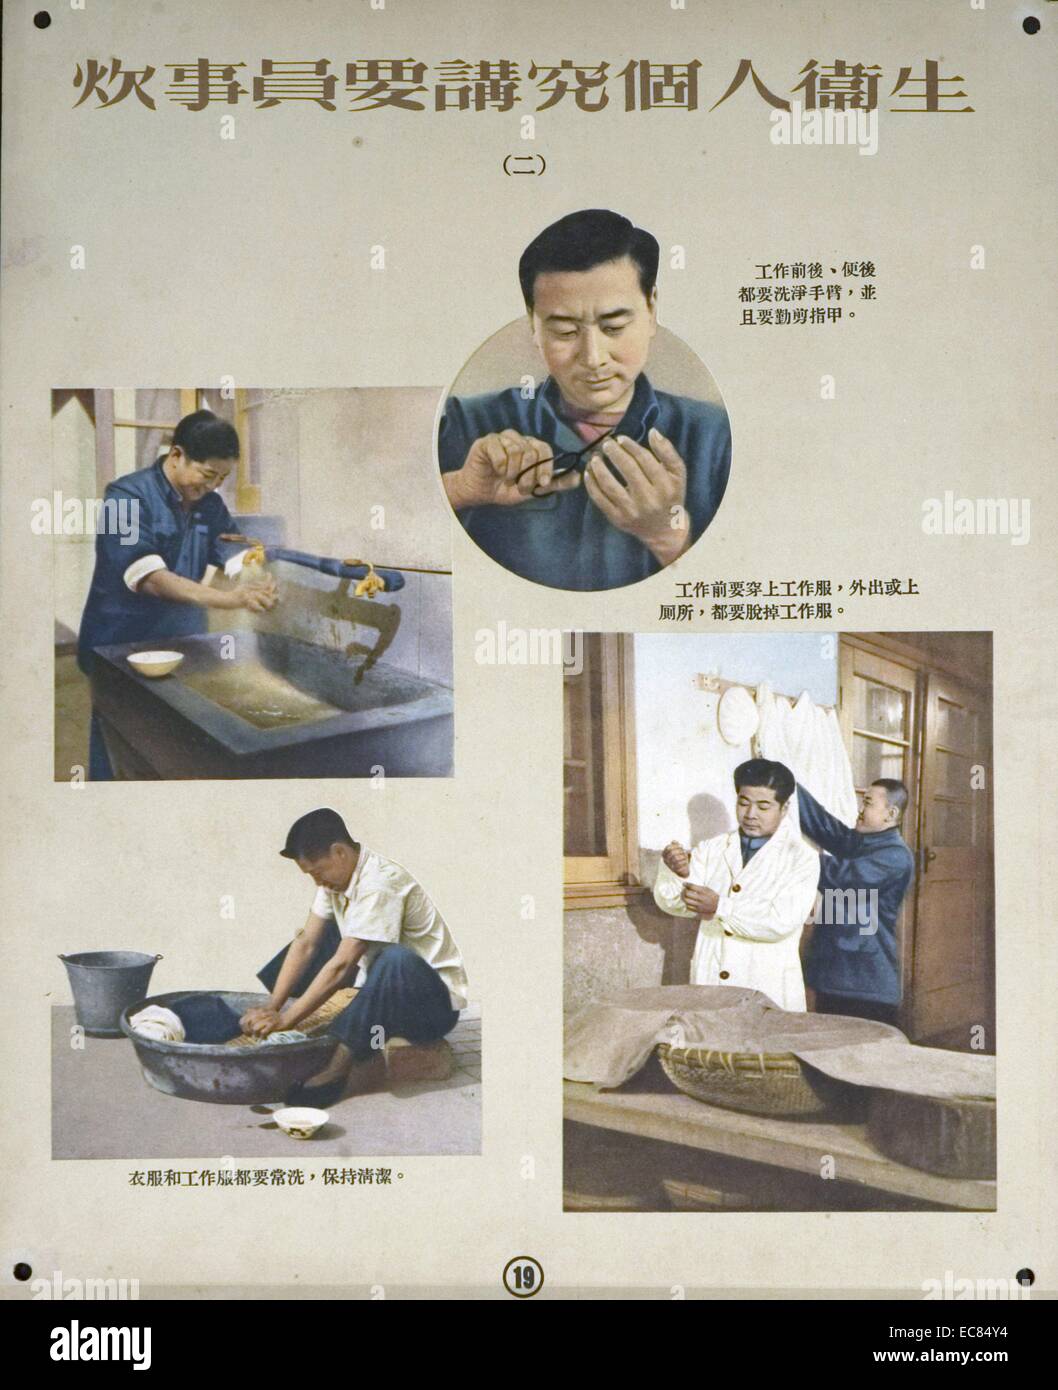 Cette affiche de cuisiniers chinois informe à maintenir leur hygiène personnelle, pour des raisons de santé et de sécurité. Les 4 images montrent une figure masculine se laver les mains, nettoyer ses vêtements, sa coupe des ongles, et le port de vêtements appropriés pour le travail. Du c1920 Banque D'Images